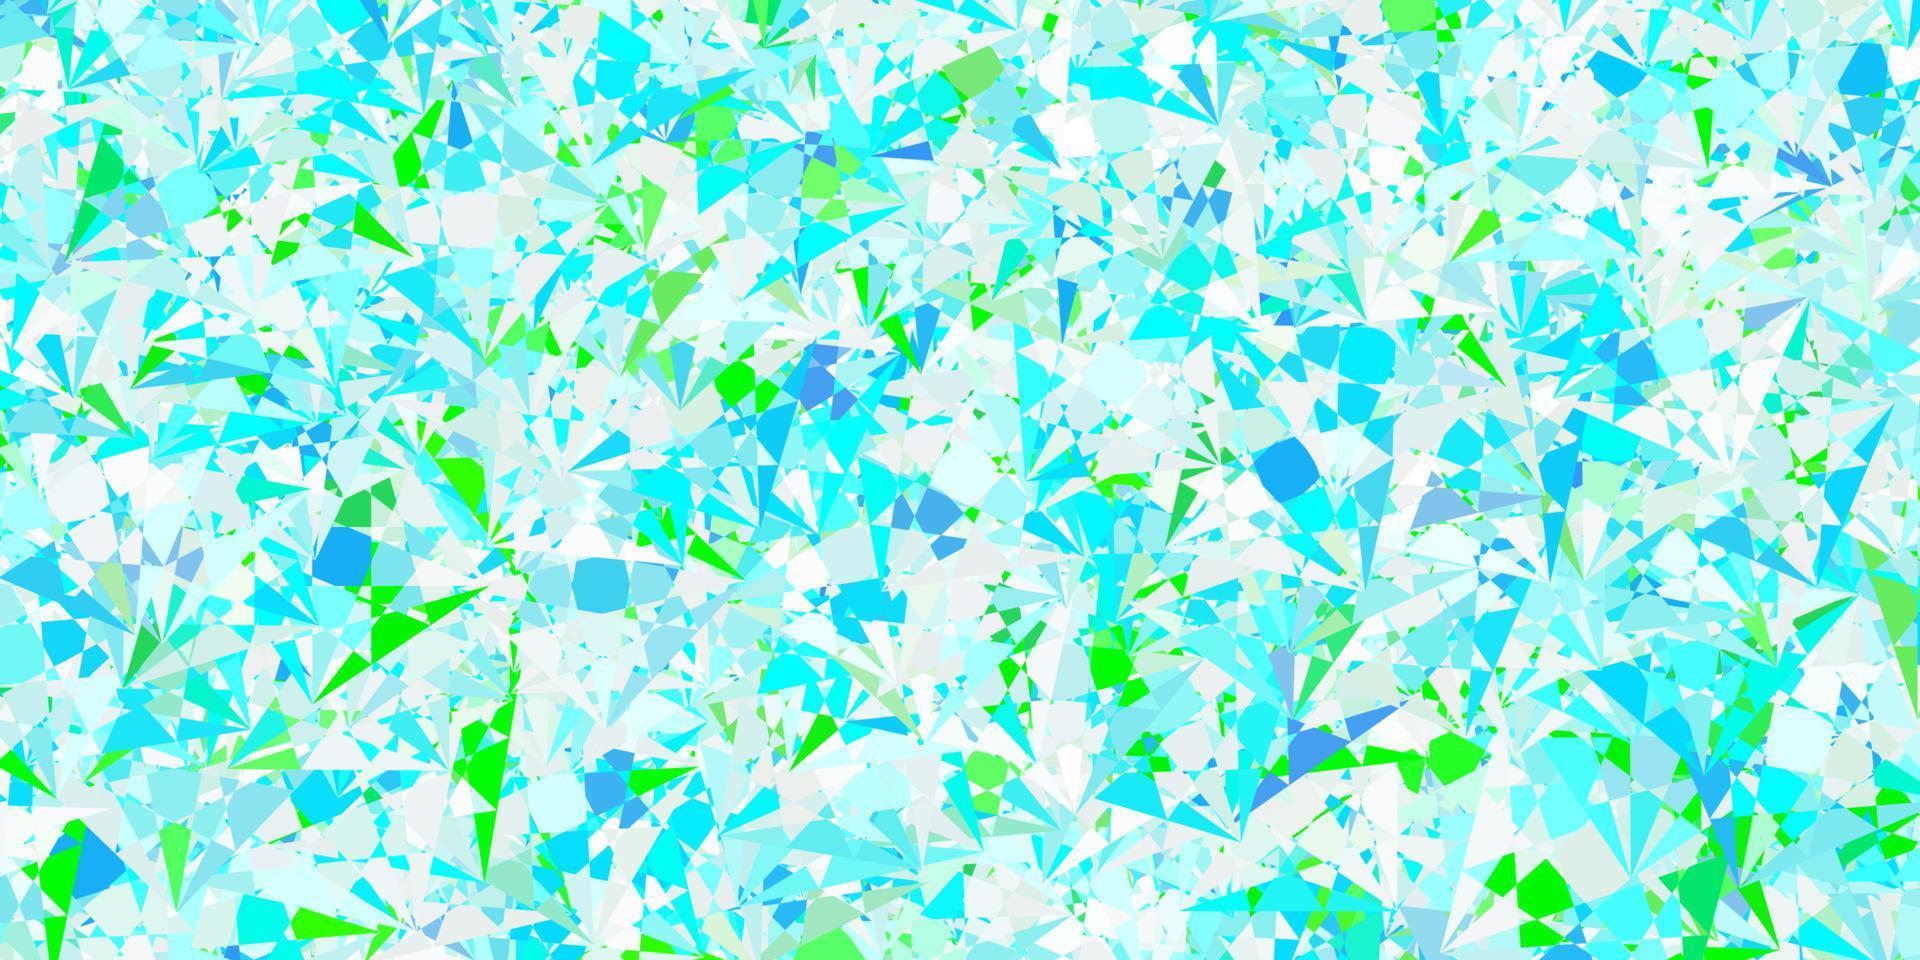 sfondo vettoriale azzurro, verde con triangoli, linee.